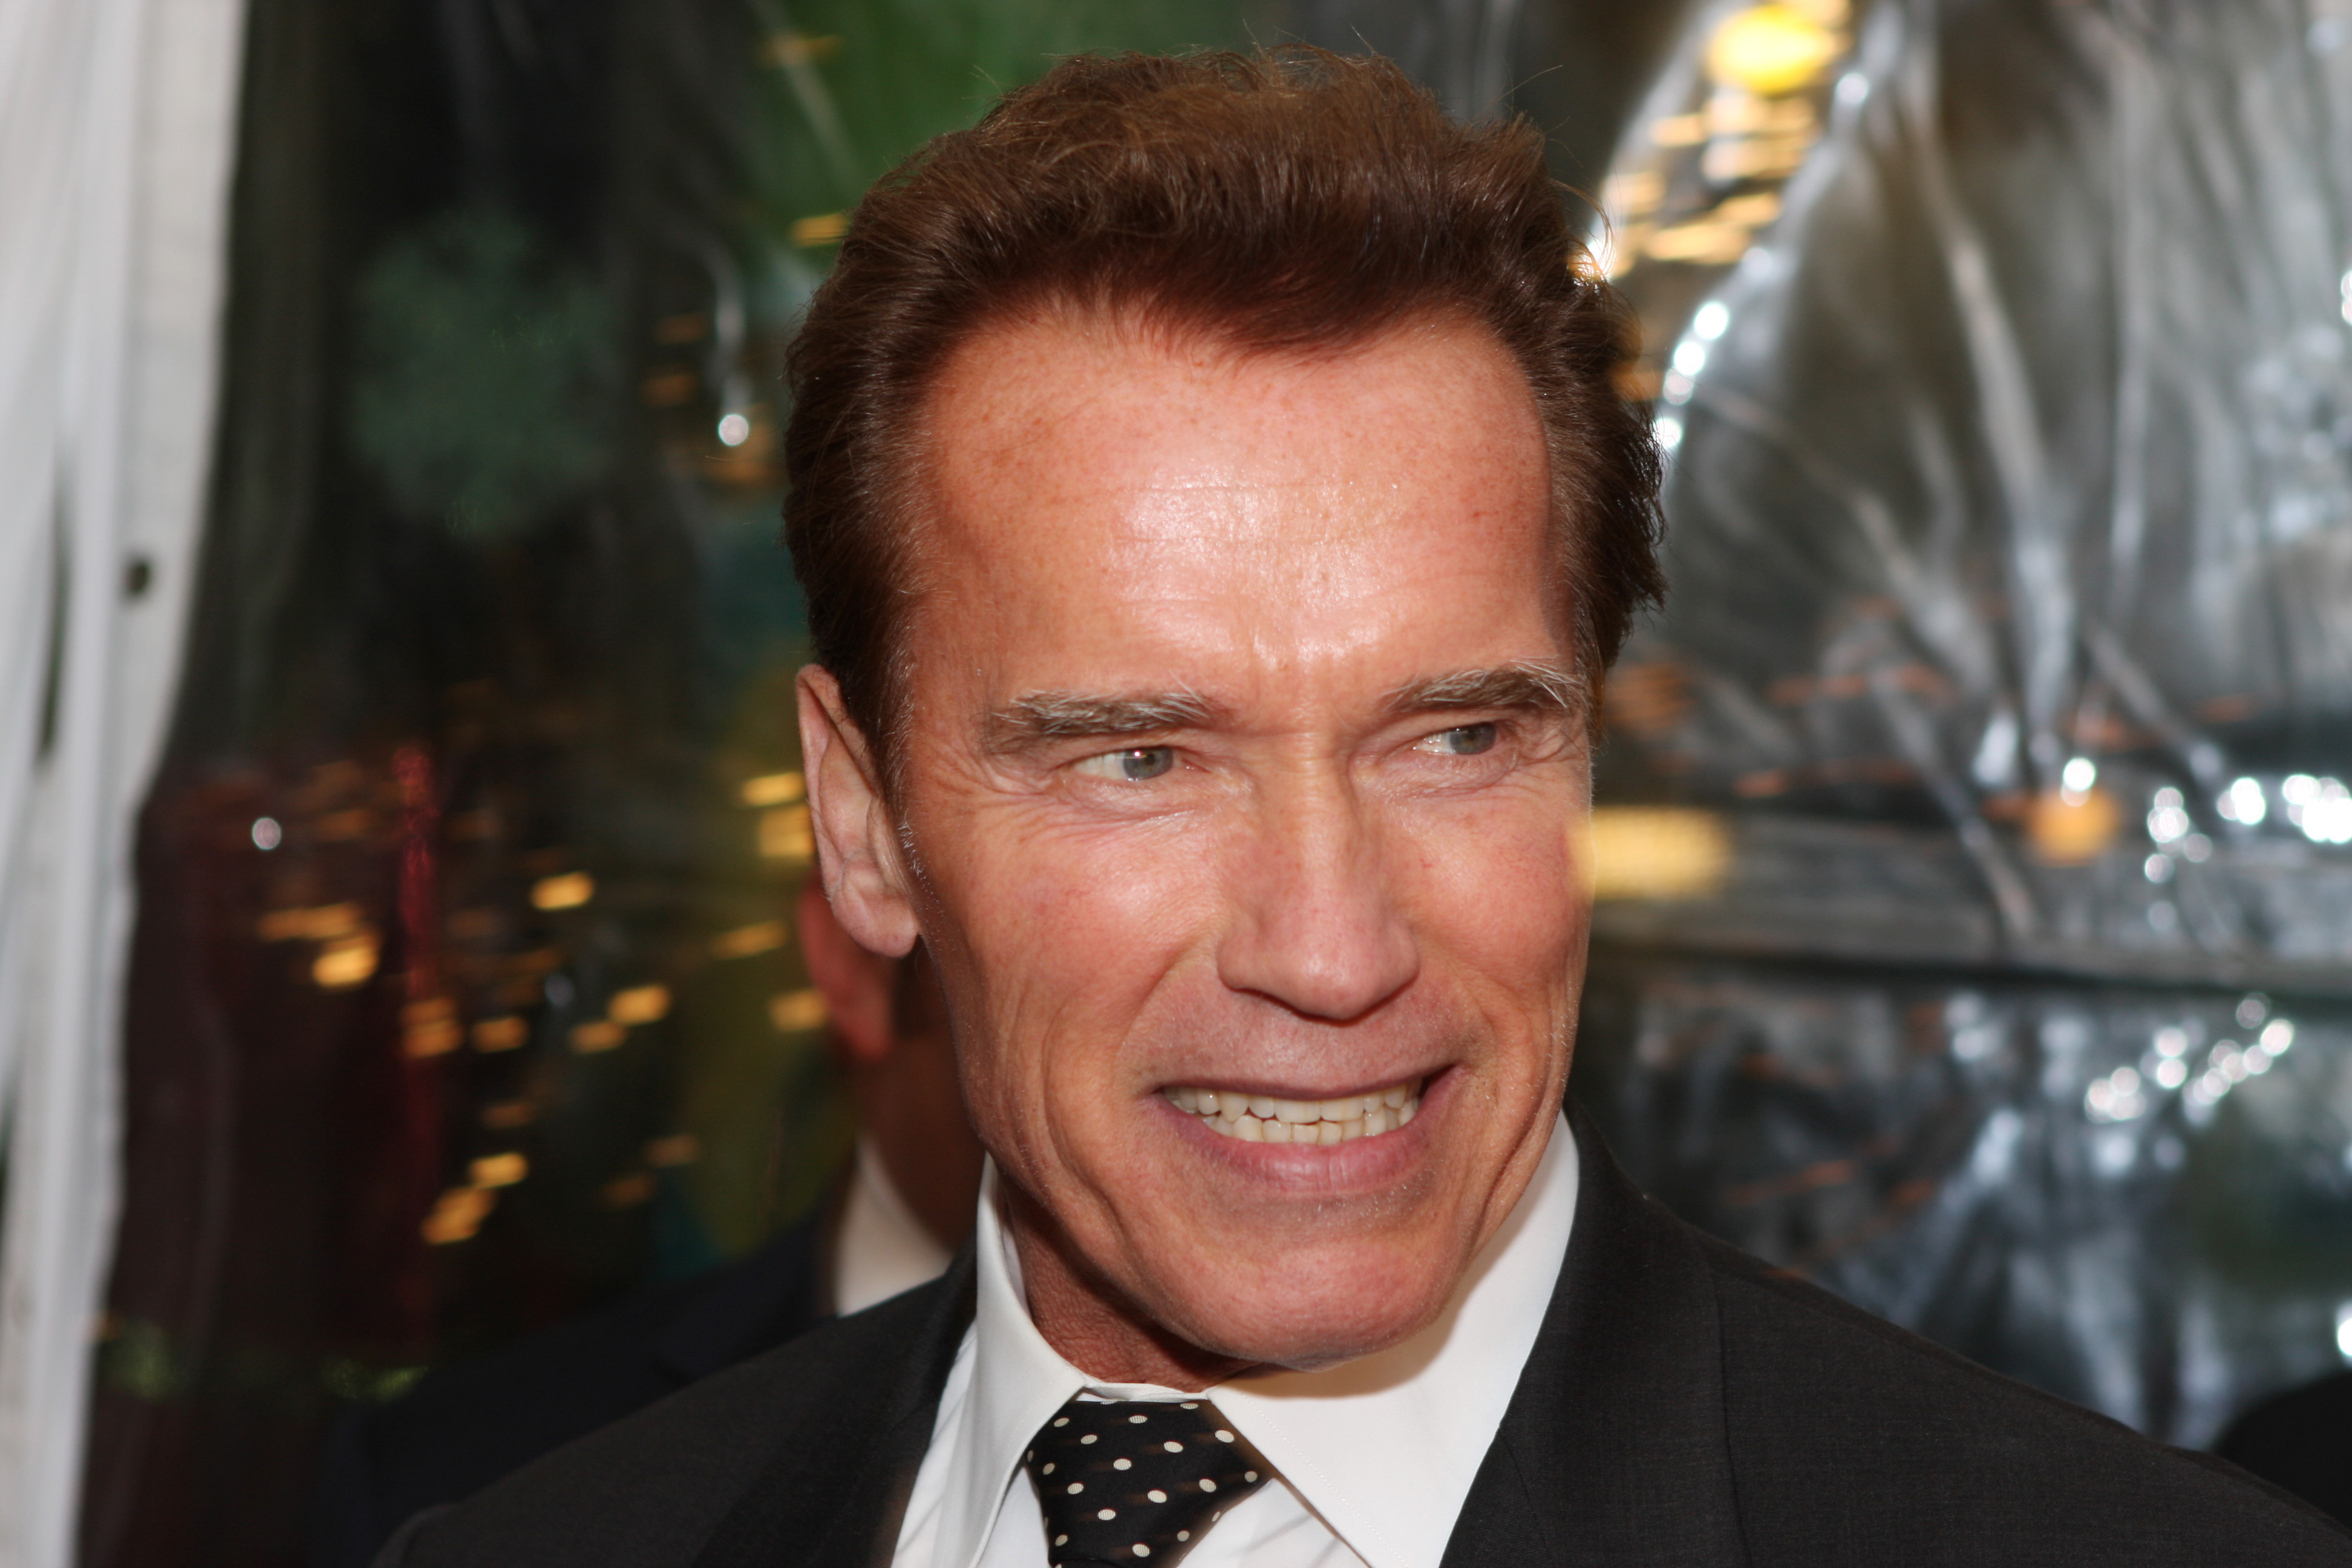 Арнольд Шварценеггер / Arnold Schwarzenegger - биография, личная жизнь,  фото и видео, рост и вес, новости | Teleprogramma.pro